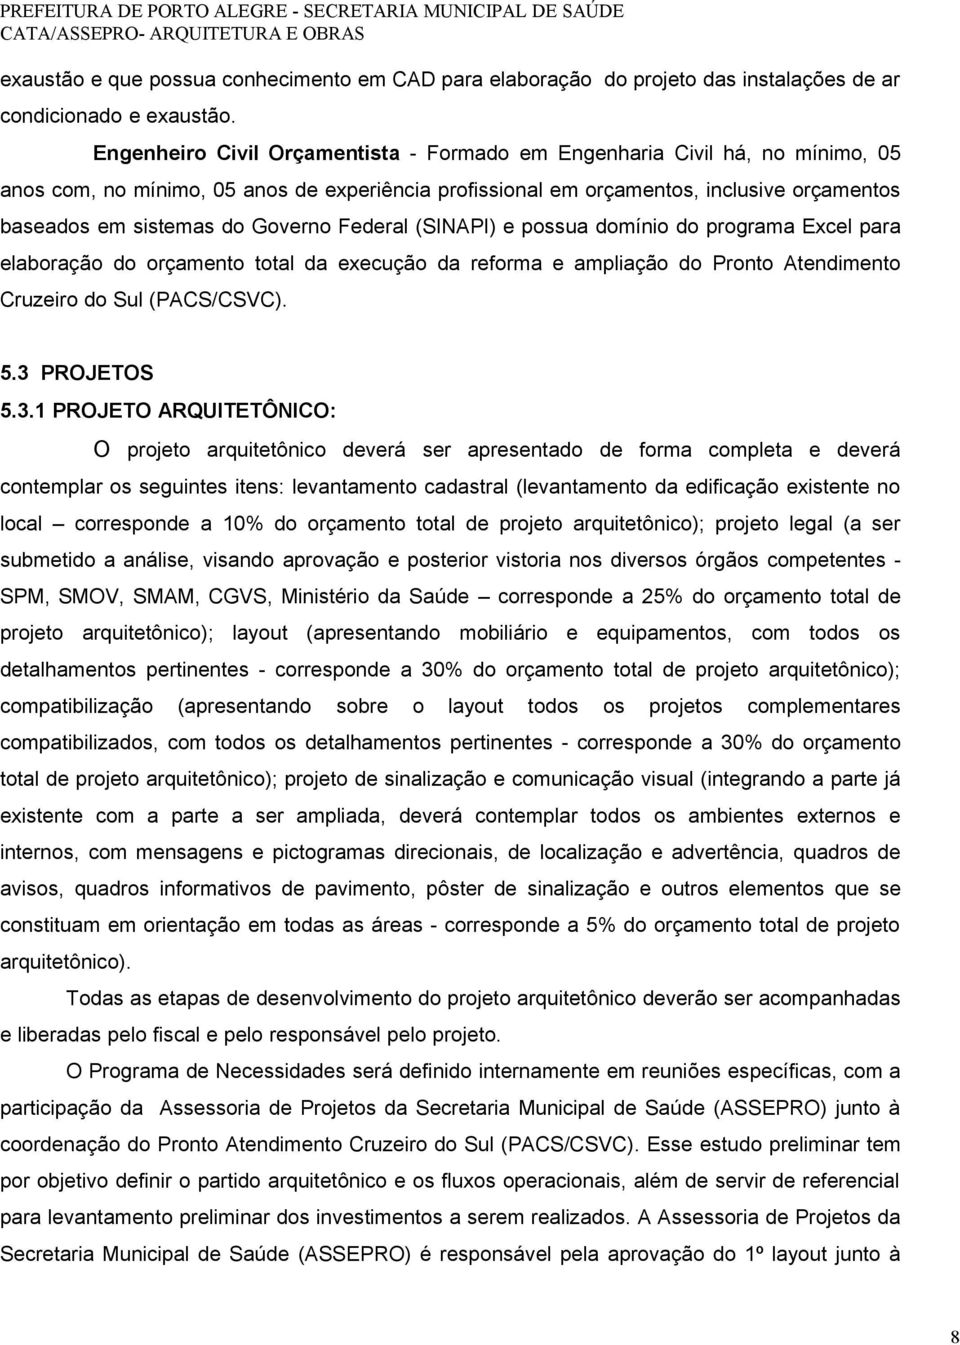 Governo Federal (SINAPI) e possua domínio do programa Excel para elaboração do orçamento total da execução da reforma e ampliação do Pronto Atendimento Cruzeiro do Sul (PACS/CSVC). 5.3 